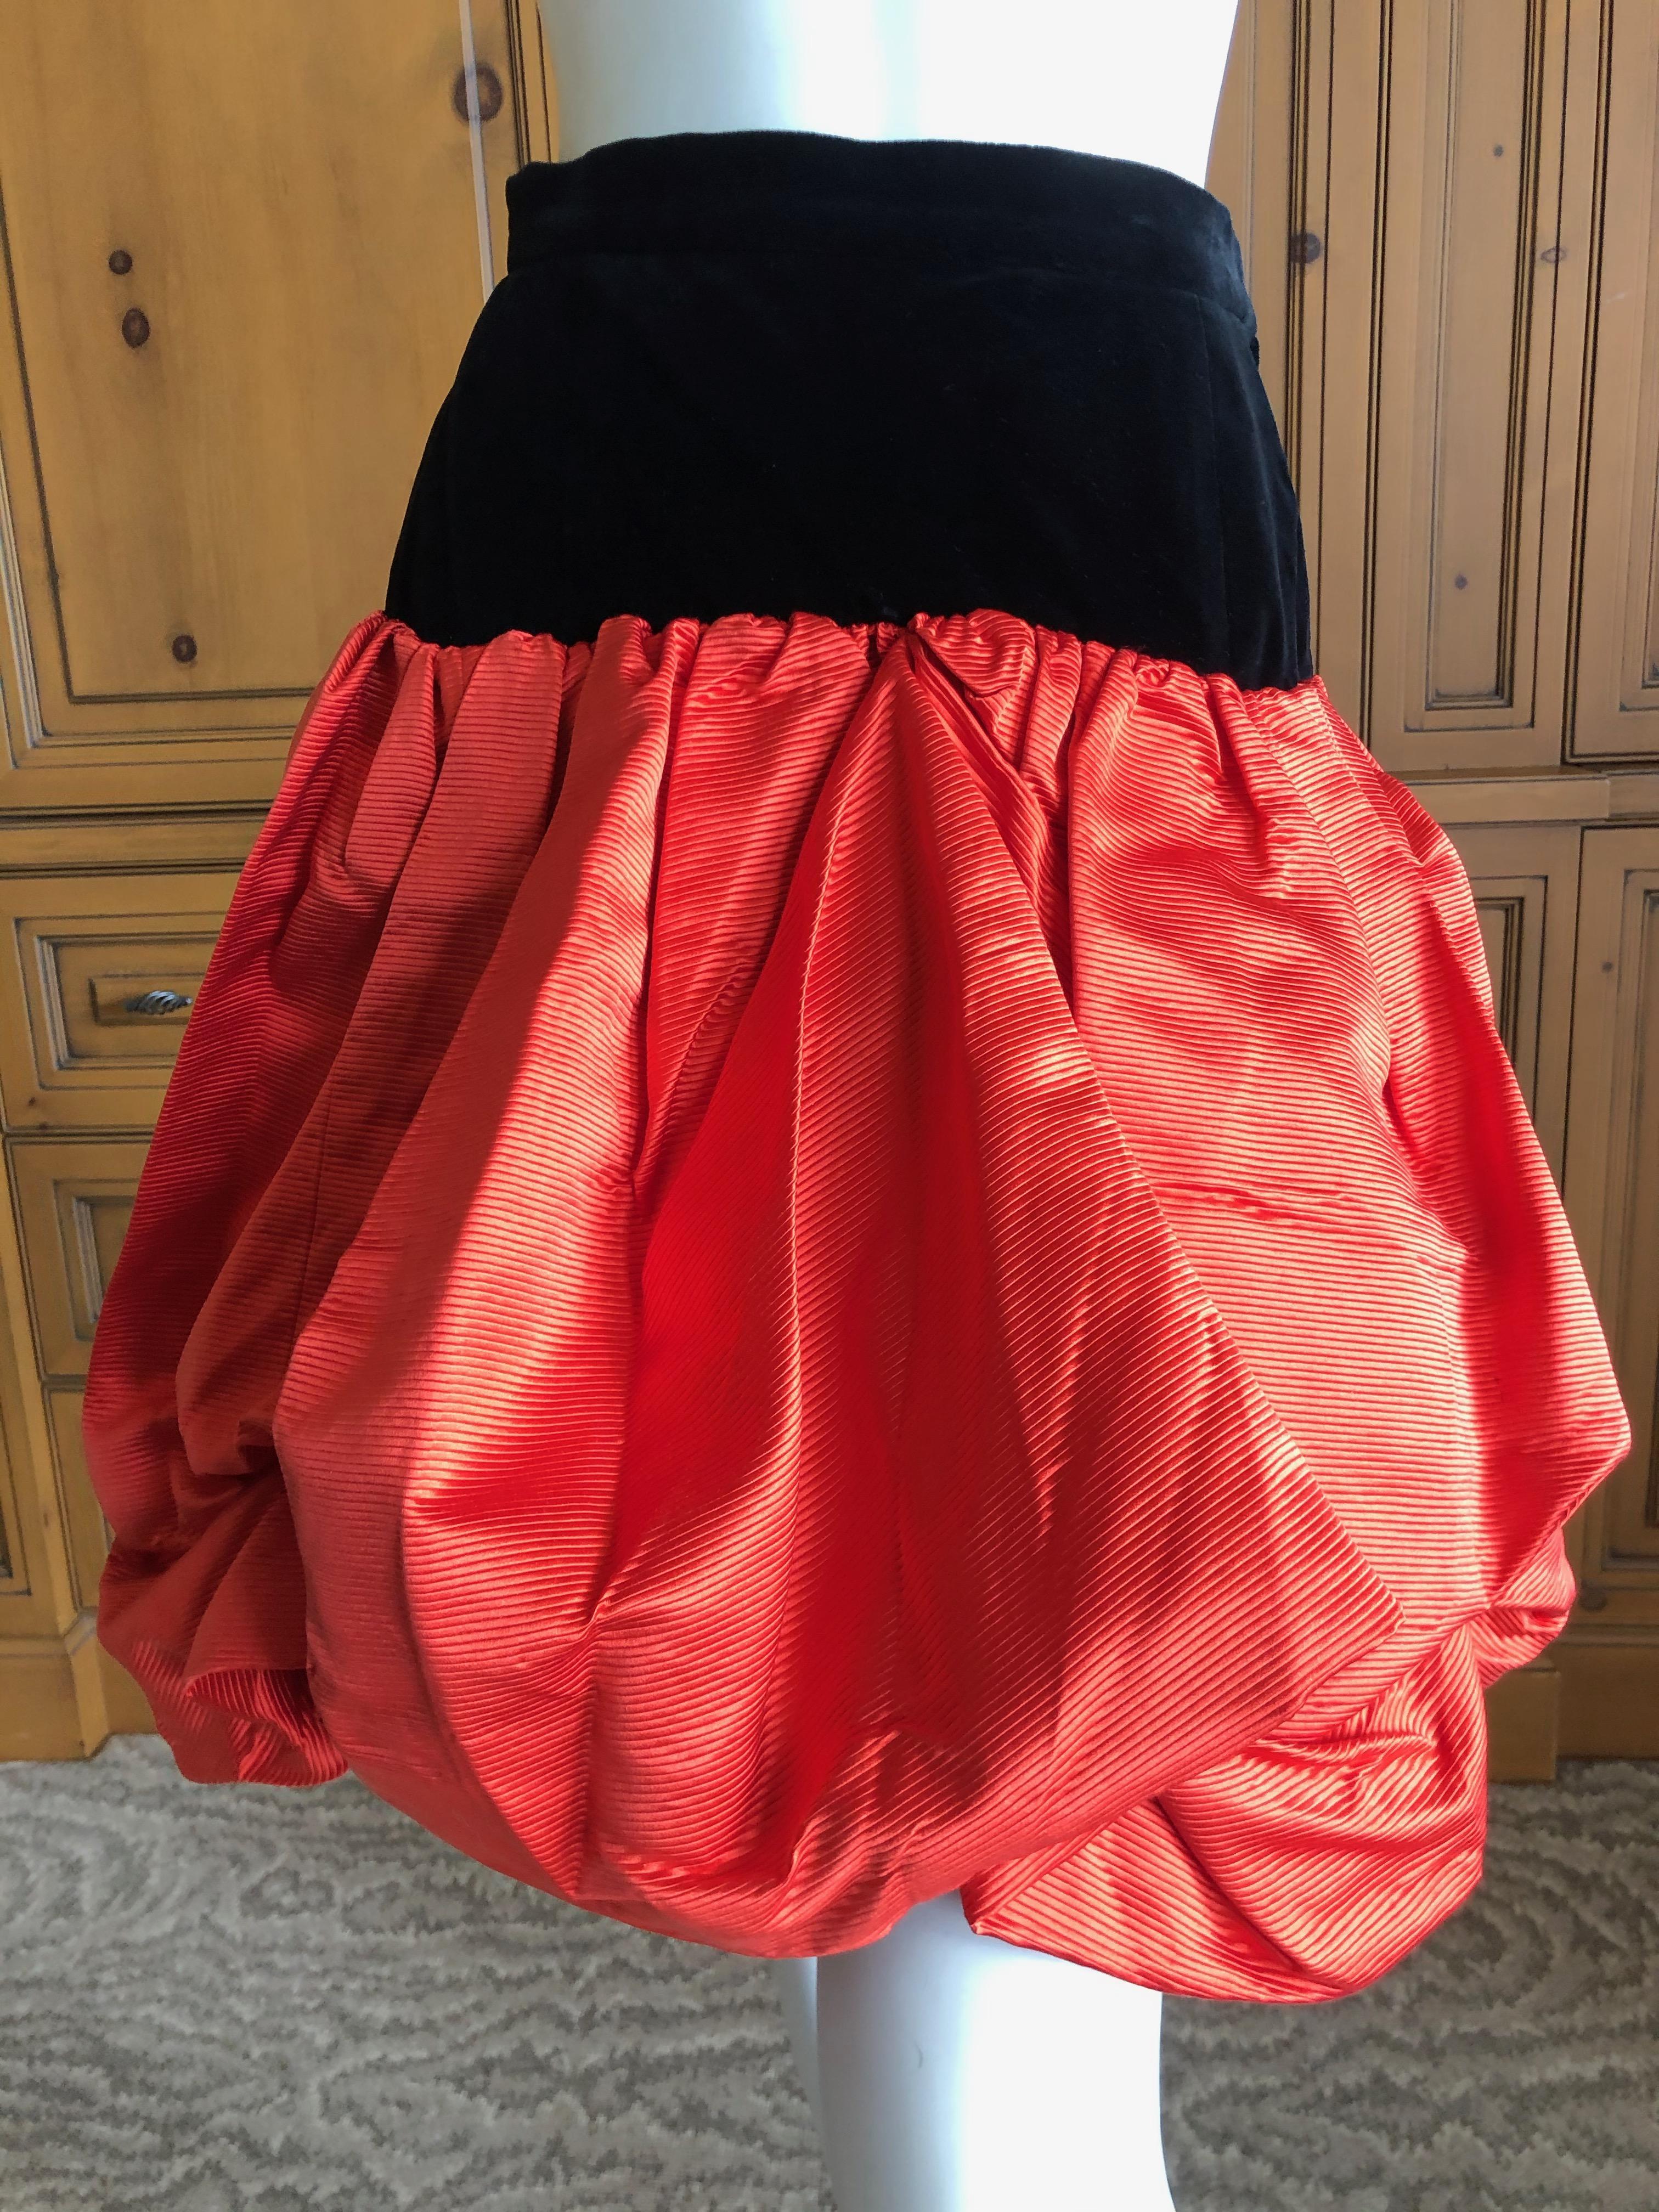 Yves Saint Laurent Rive Gauche Vintage 70's Orange Silk and Velvet Pouf Skirt
Size 38
Waist 27